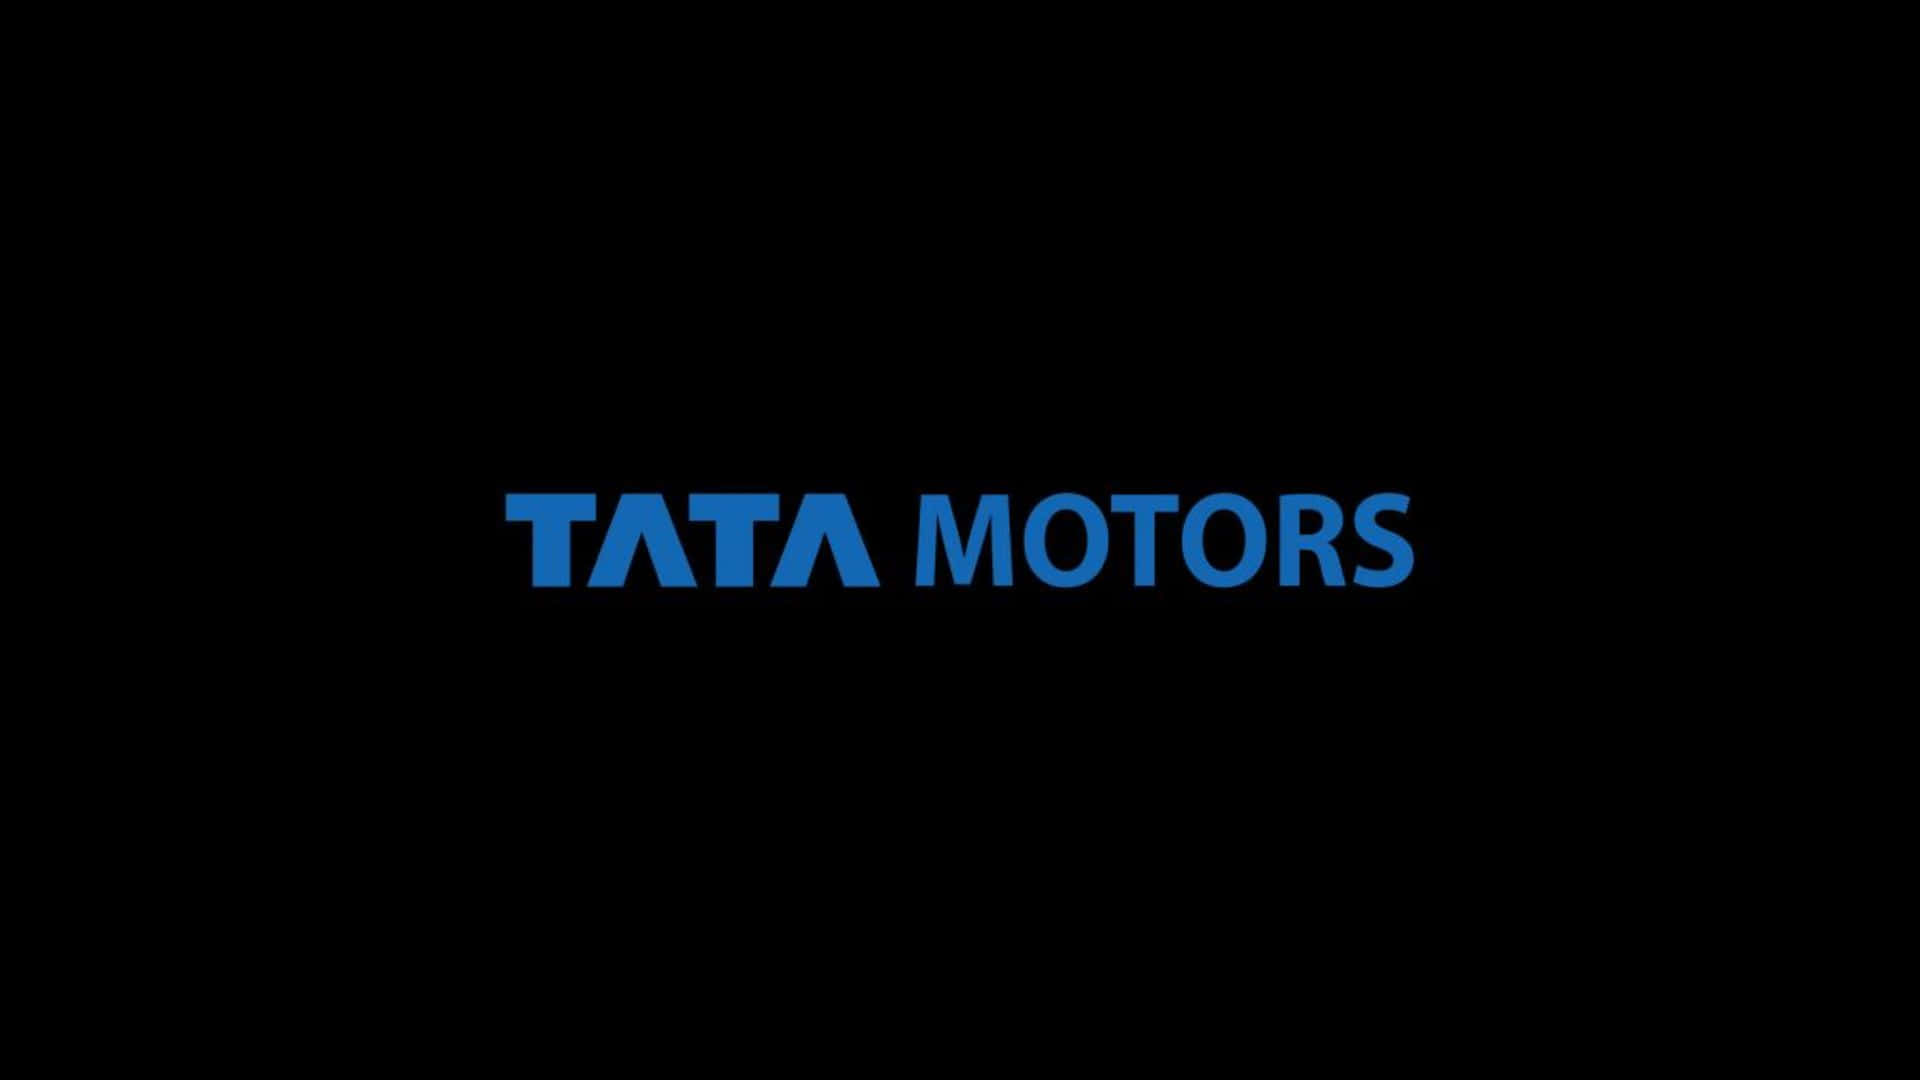 Diseñoimpecable De Tata Motors En Acción. Fondo de pantalla